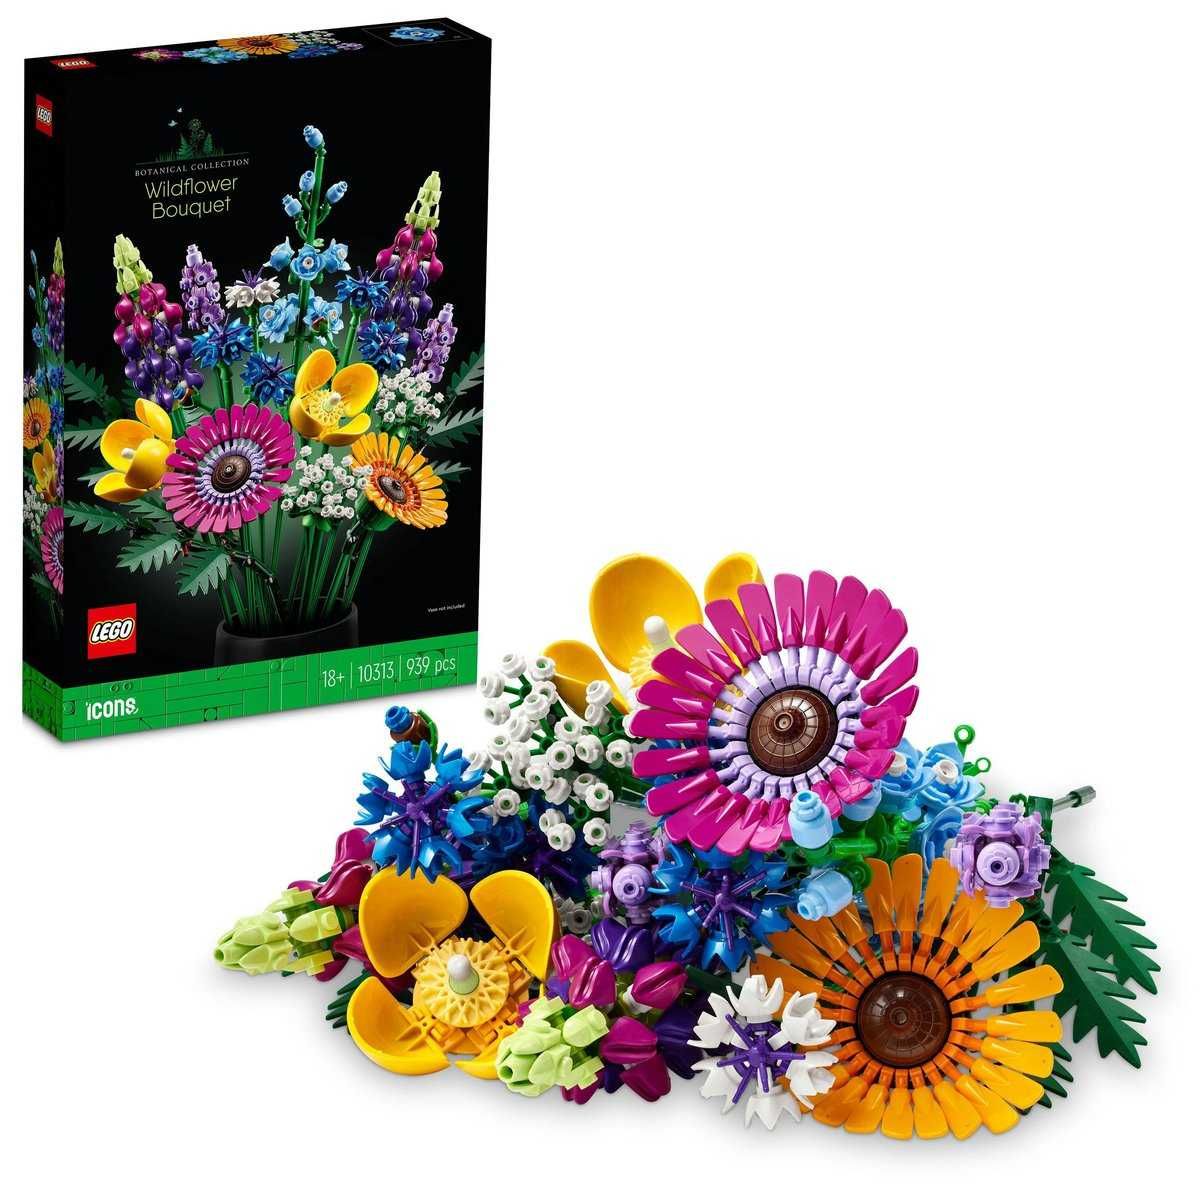 LEGO ICONS 10313 BUKIET z polnych kwiatów